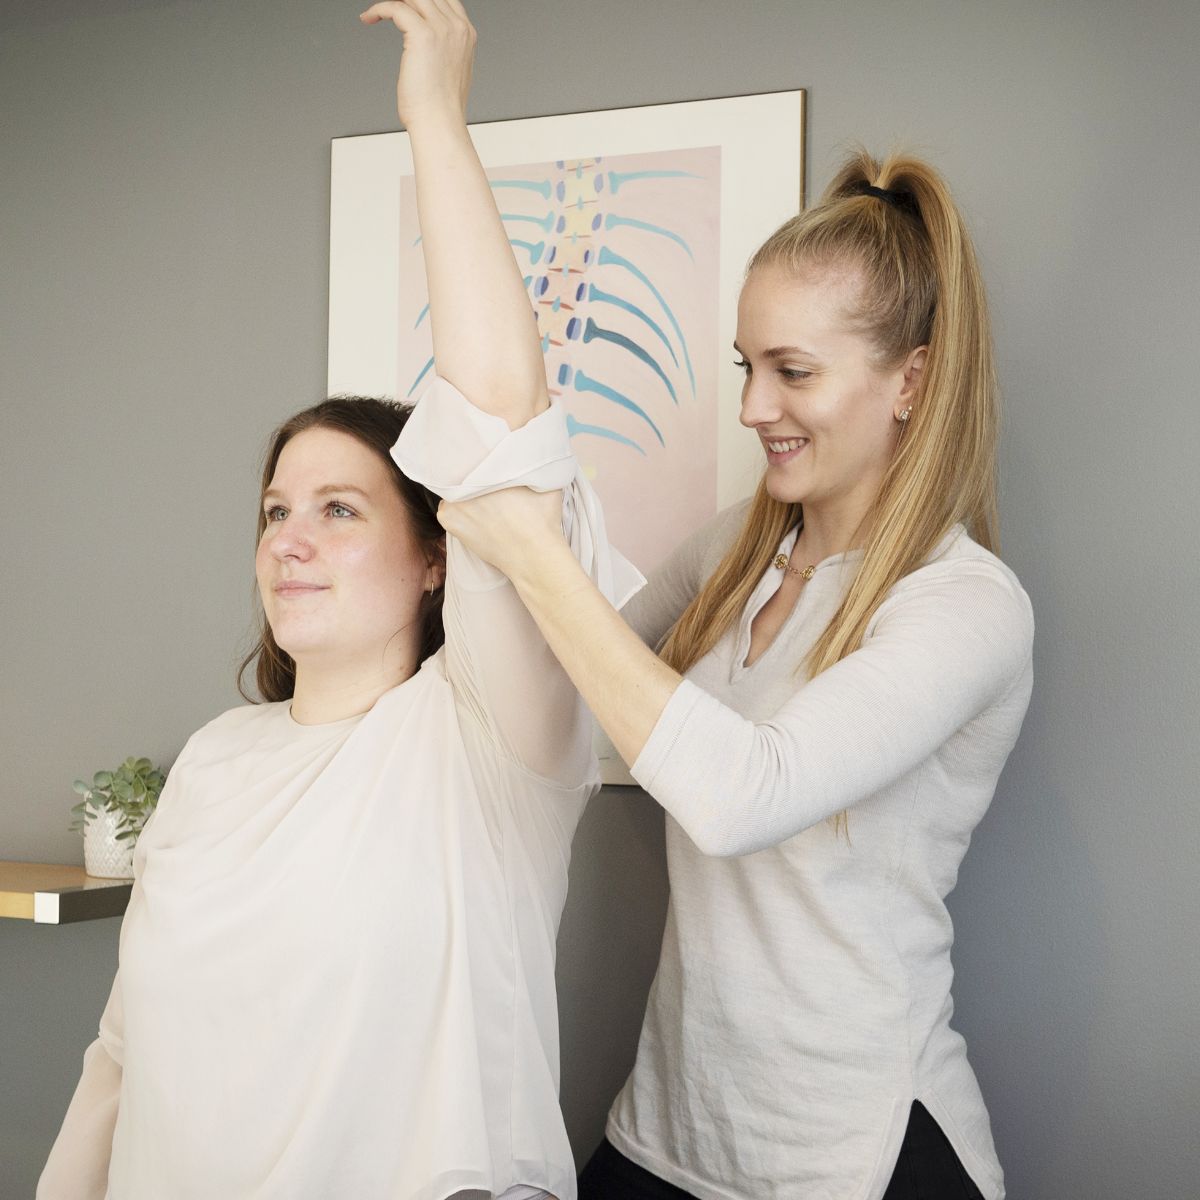 Chiropractor helping patient stretch